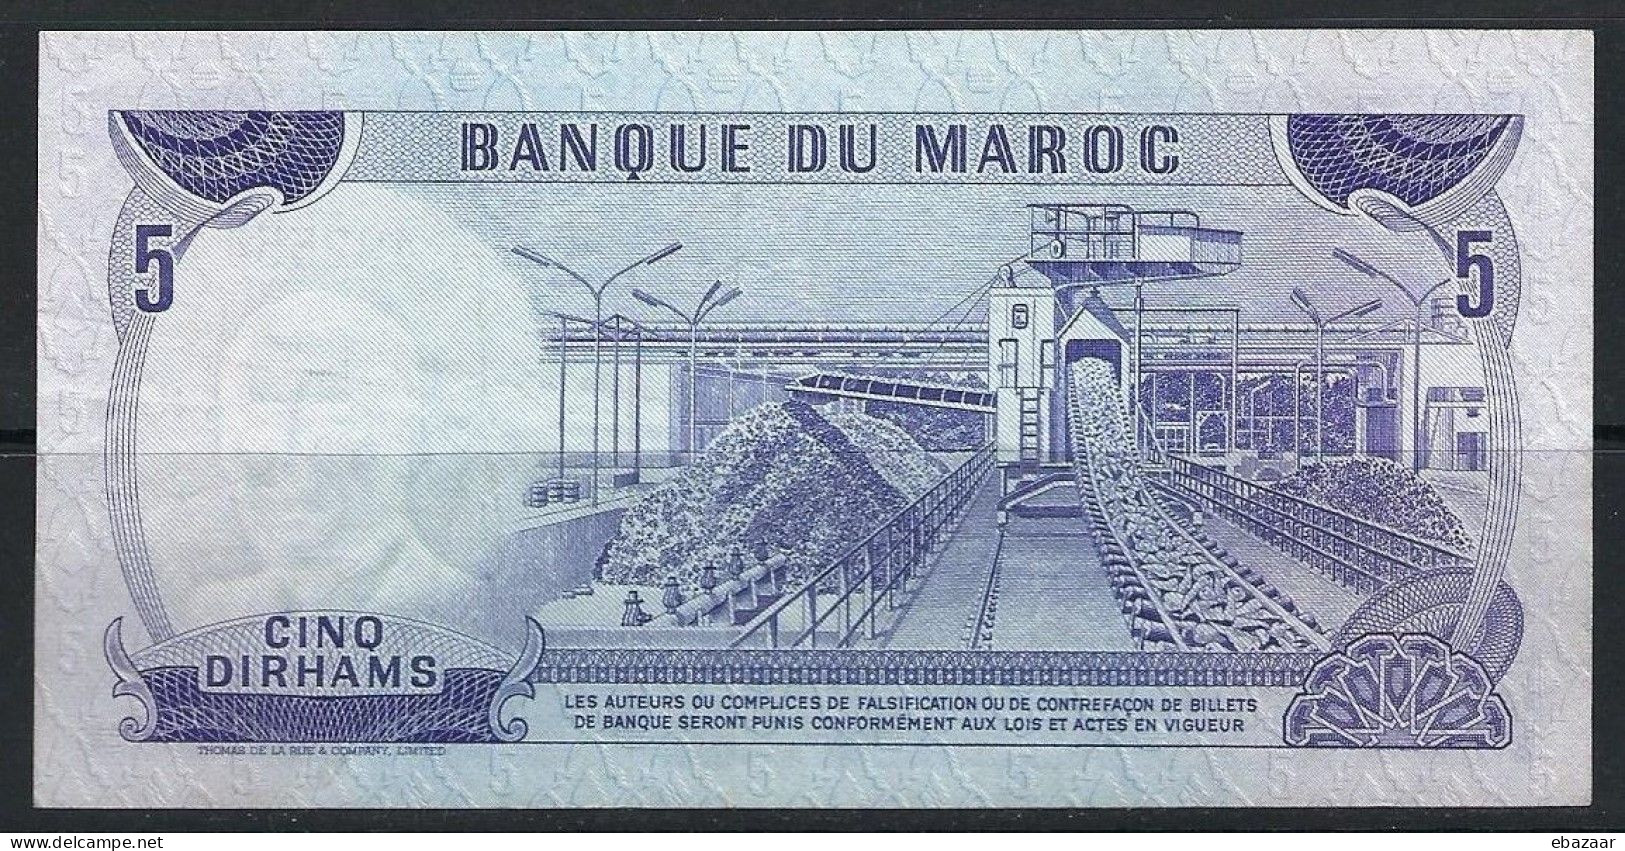 Morocco 1970 Banque Du Maroc 5 Dirhams Banknote P-56a VF++ Crisp - Marruecos